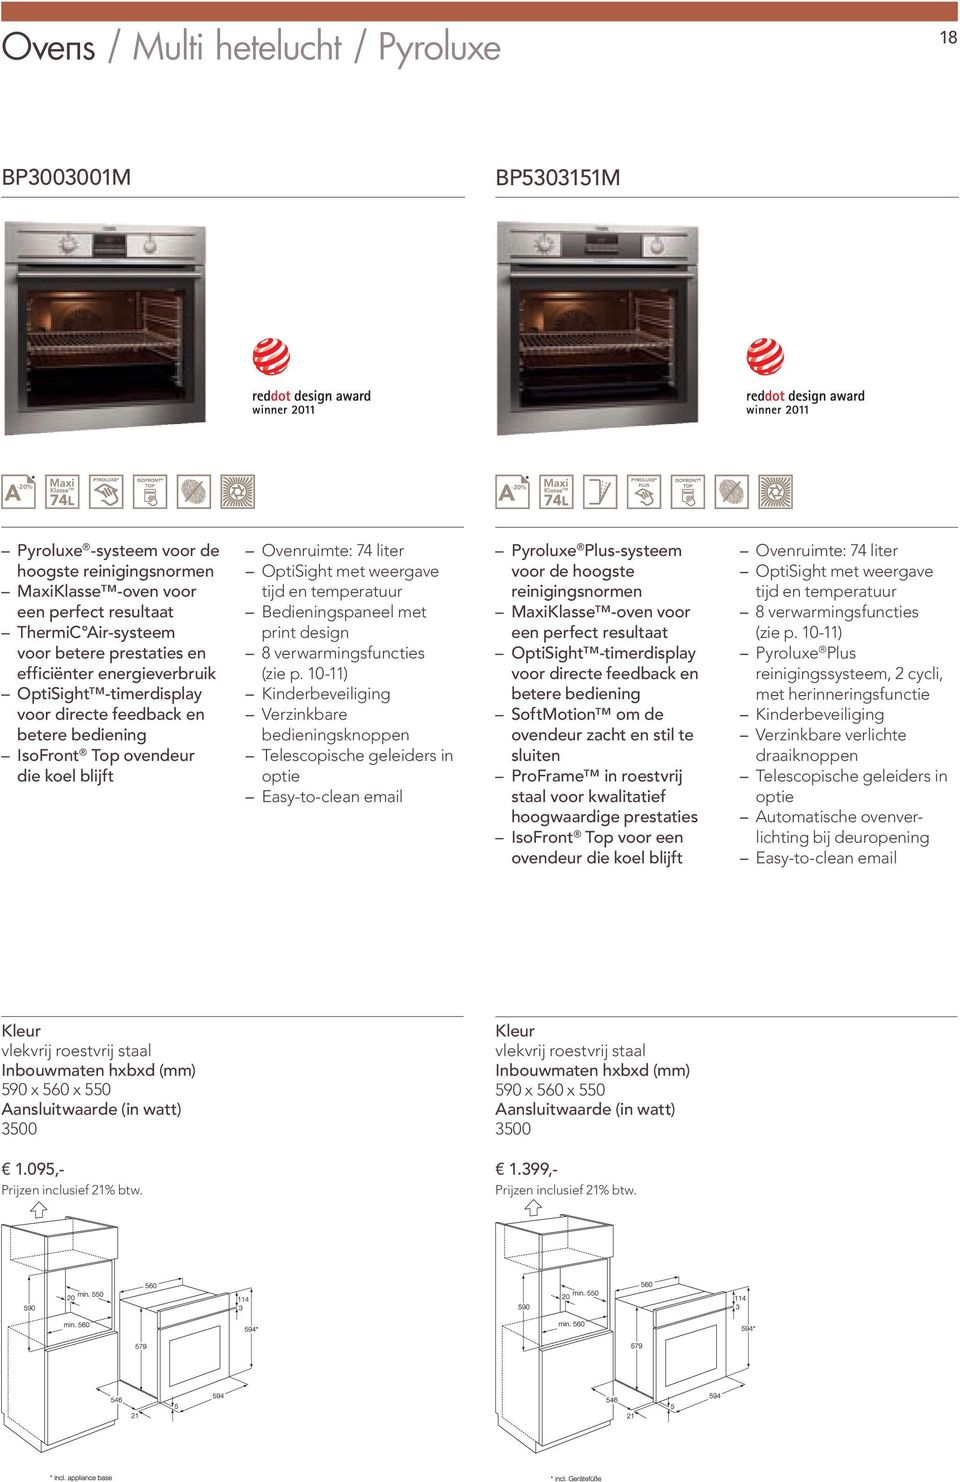 Bedieningspaneel met print design 8 verwarmingsfuncties Verzinkbare bedieningsknoppen Telescopische geleiders in optie Pyroluxe Plus-systeem voor de hoogste reinigingsnormen MaxiKlasse -oven voor een